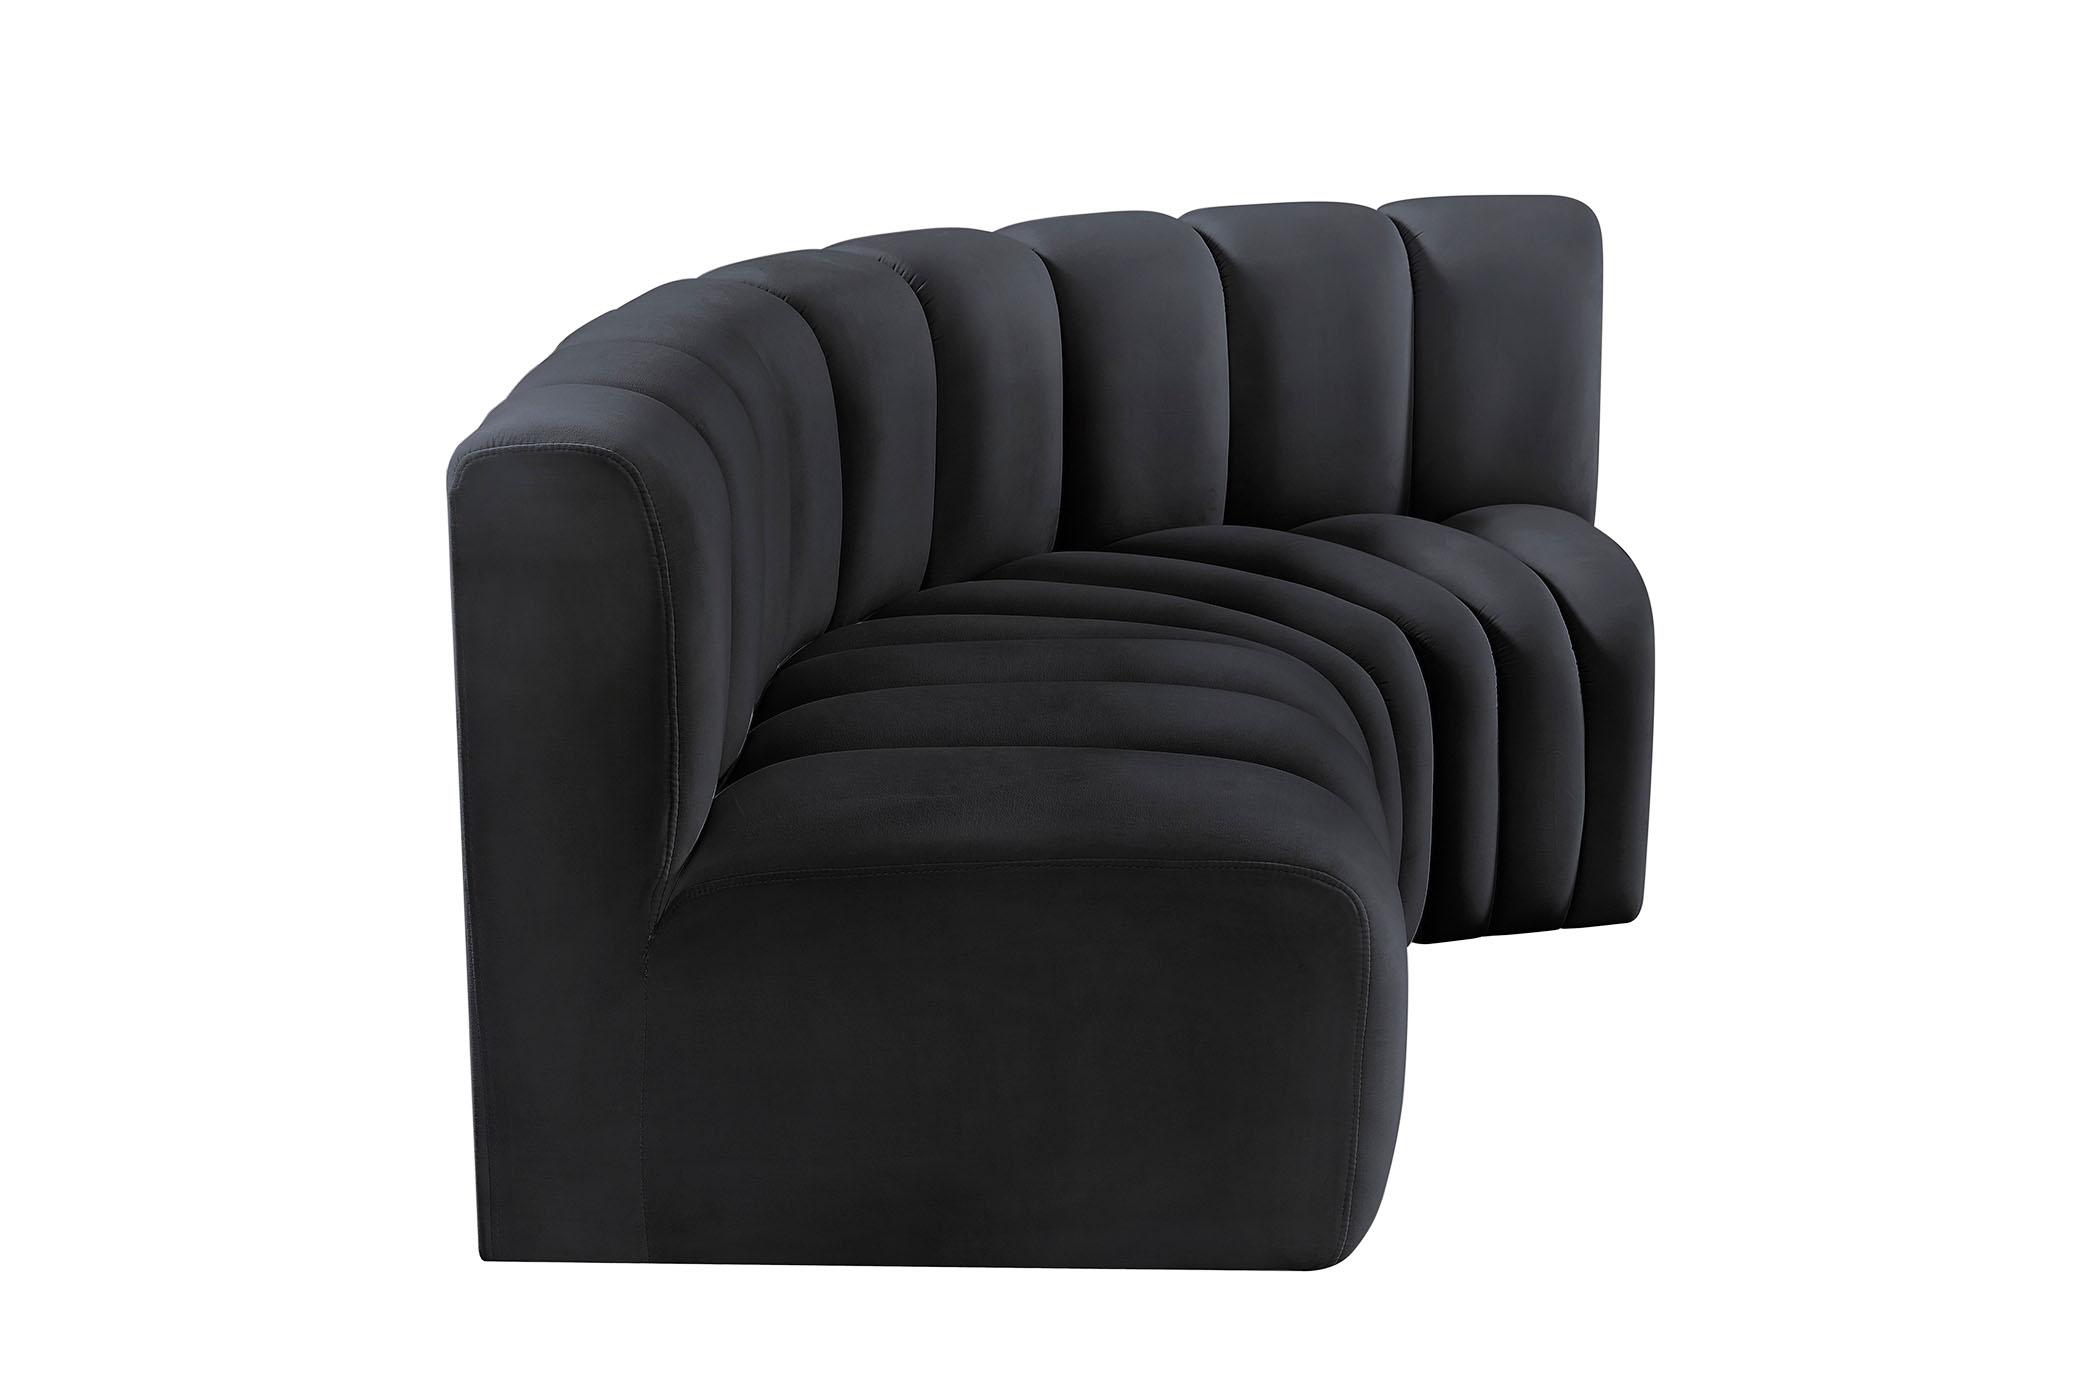 

    
103Black-S3A Meridian Furniture Modular Sectional Sofa
